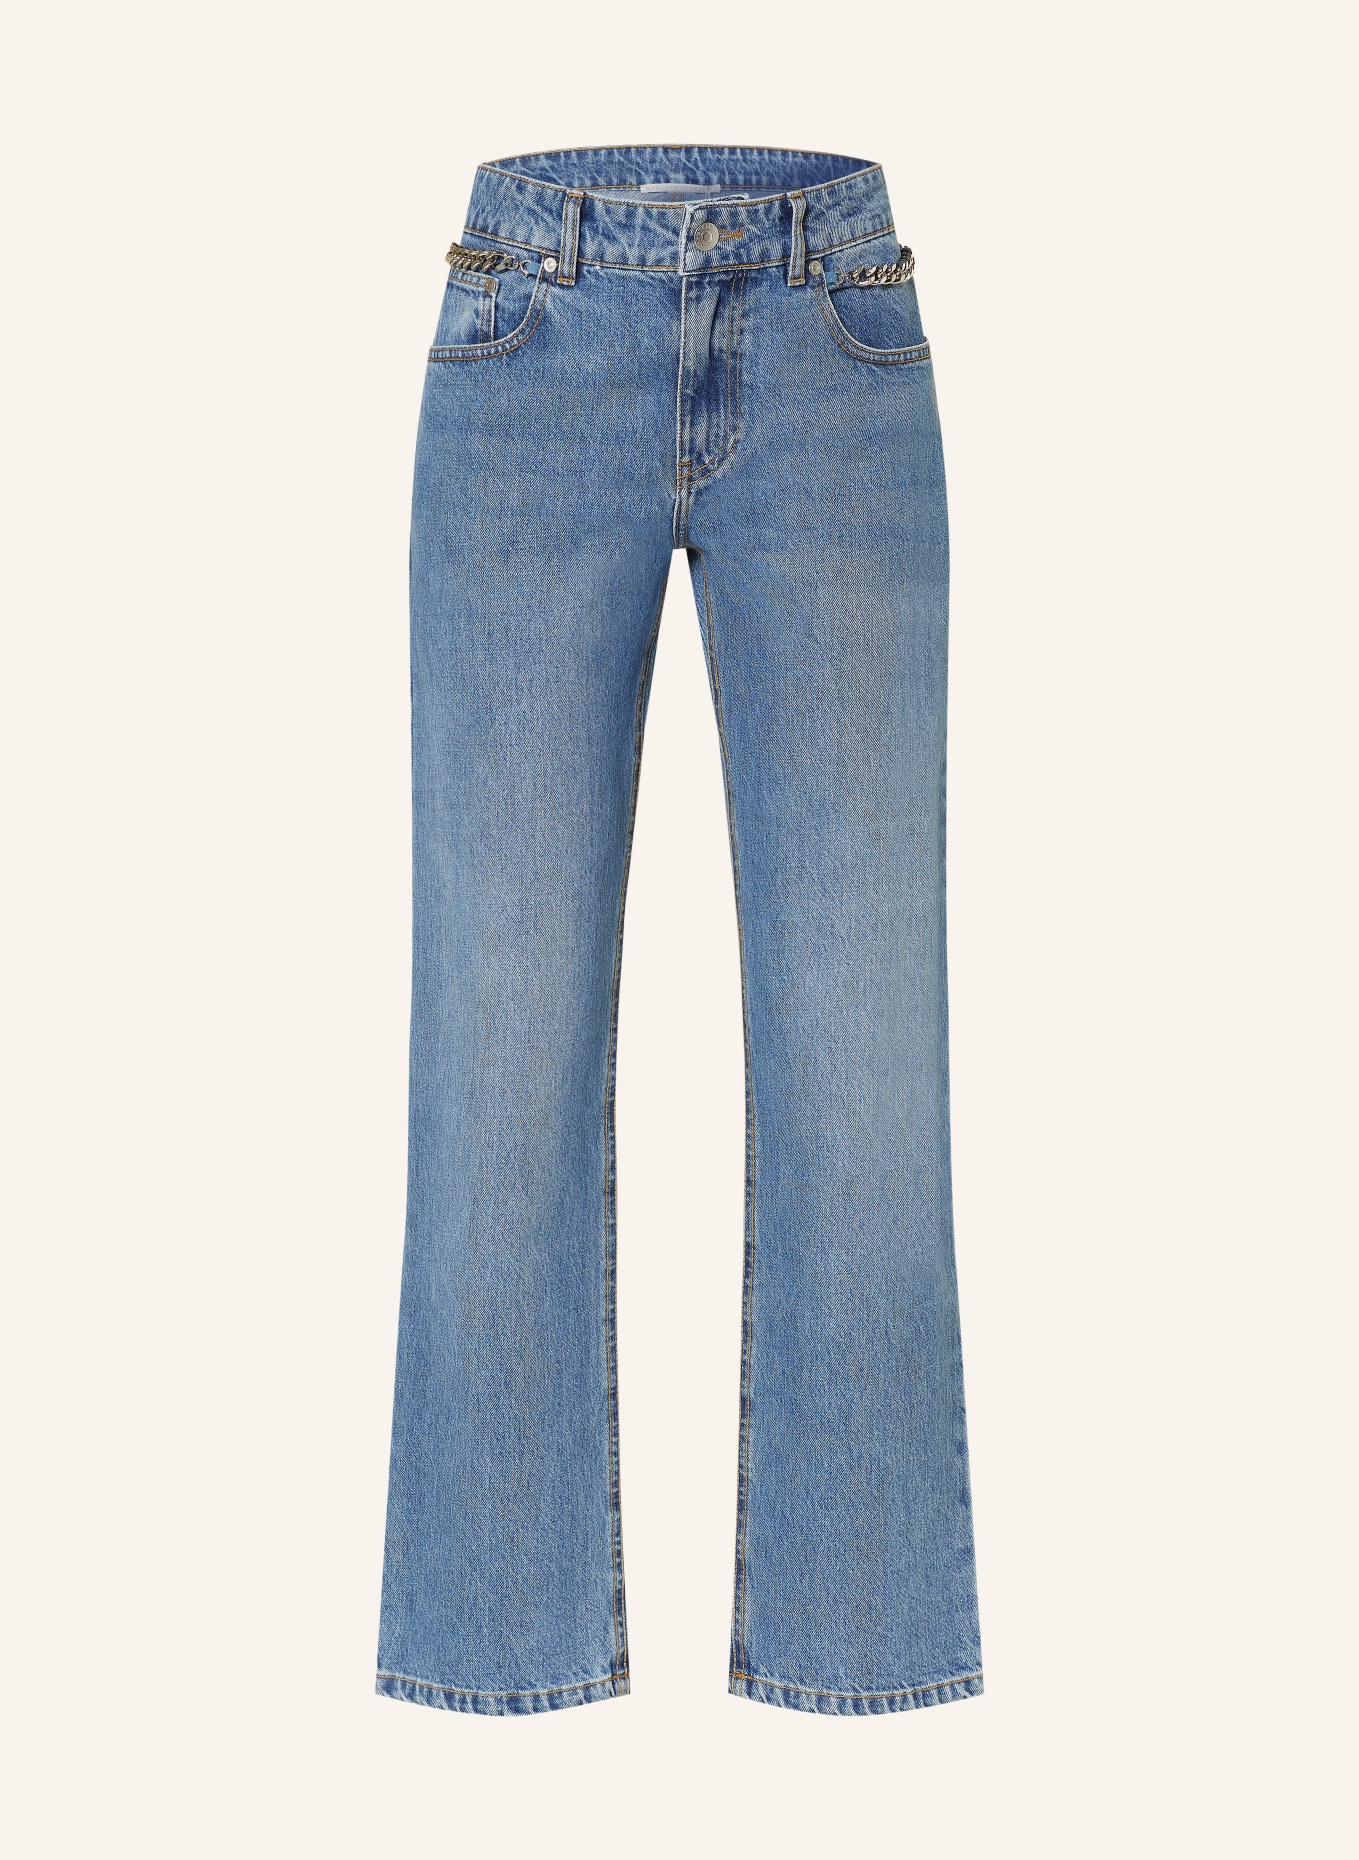 STELLA McCARTNEY Jeans, Color: 4599 MID VINTAGE BLUE (Image 1)